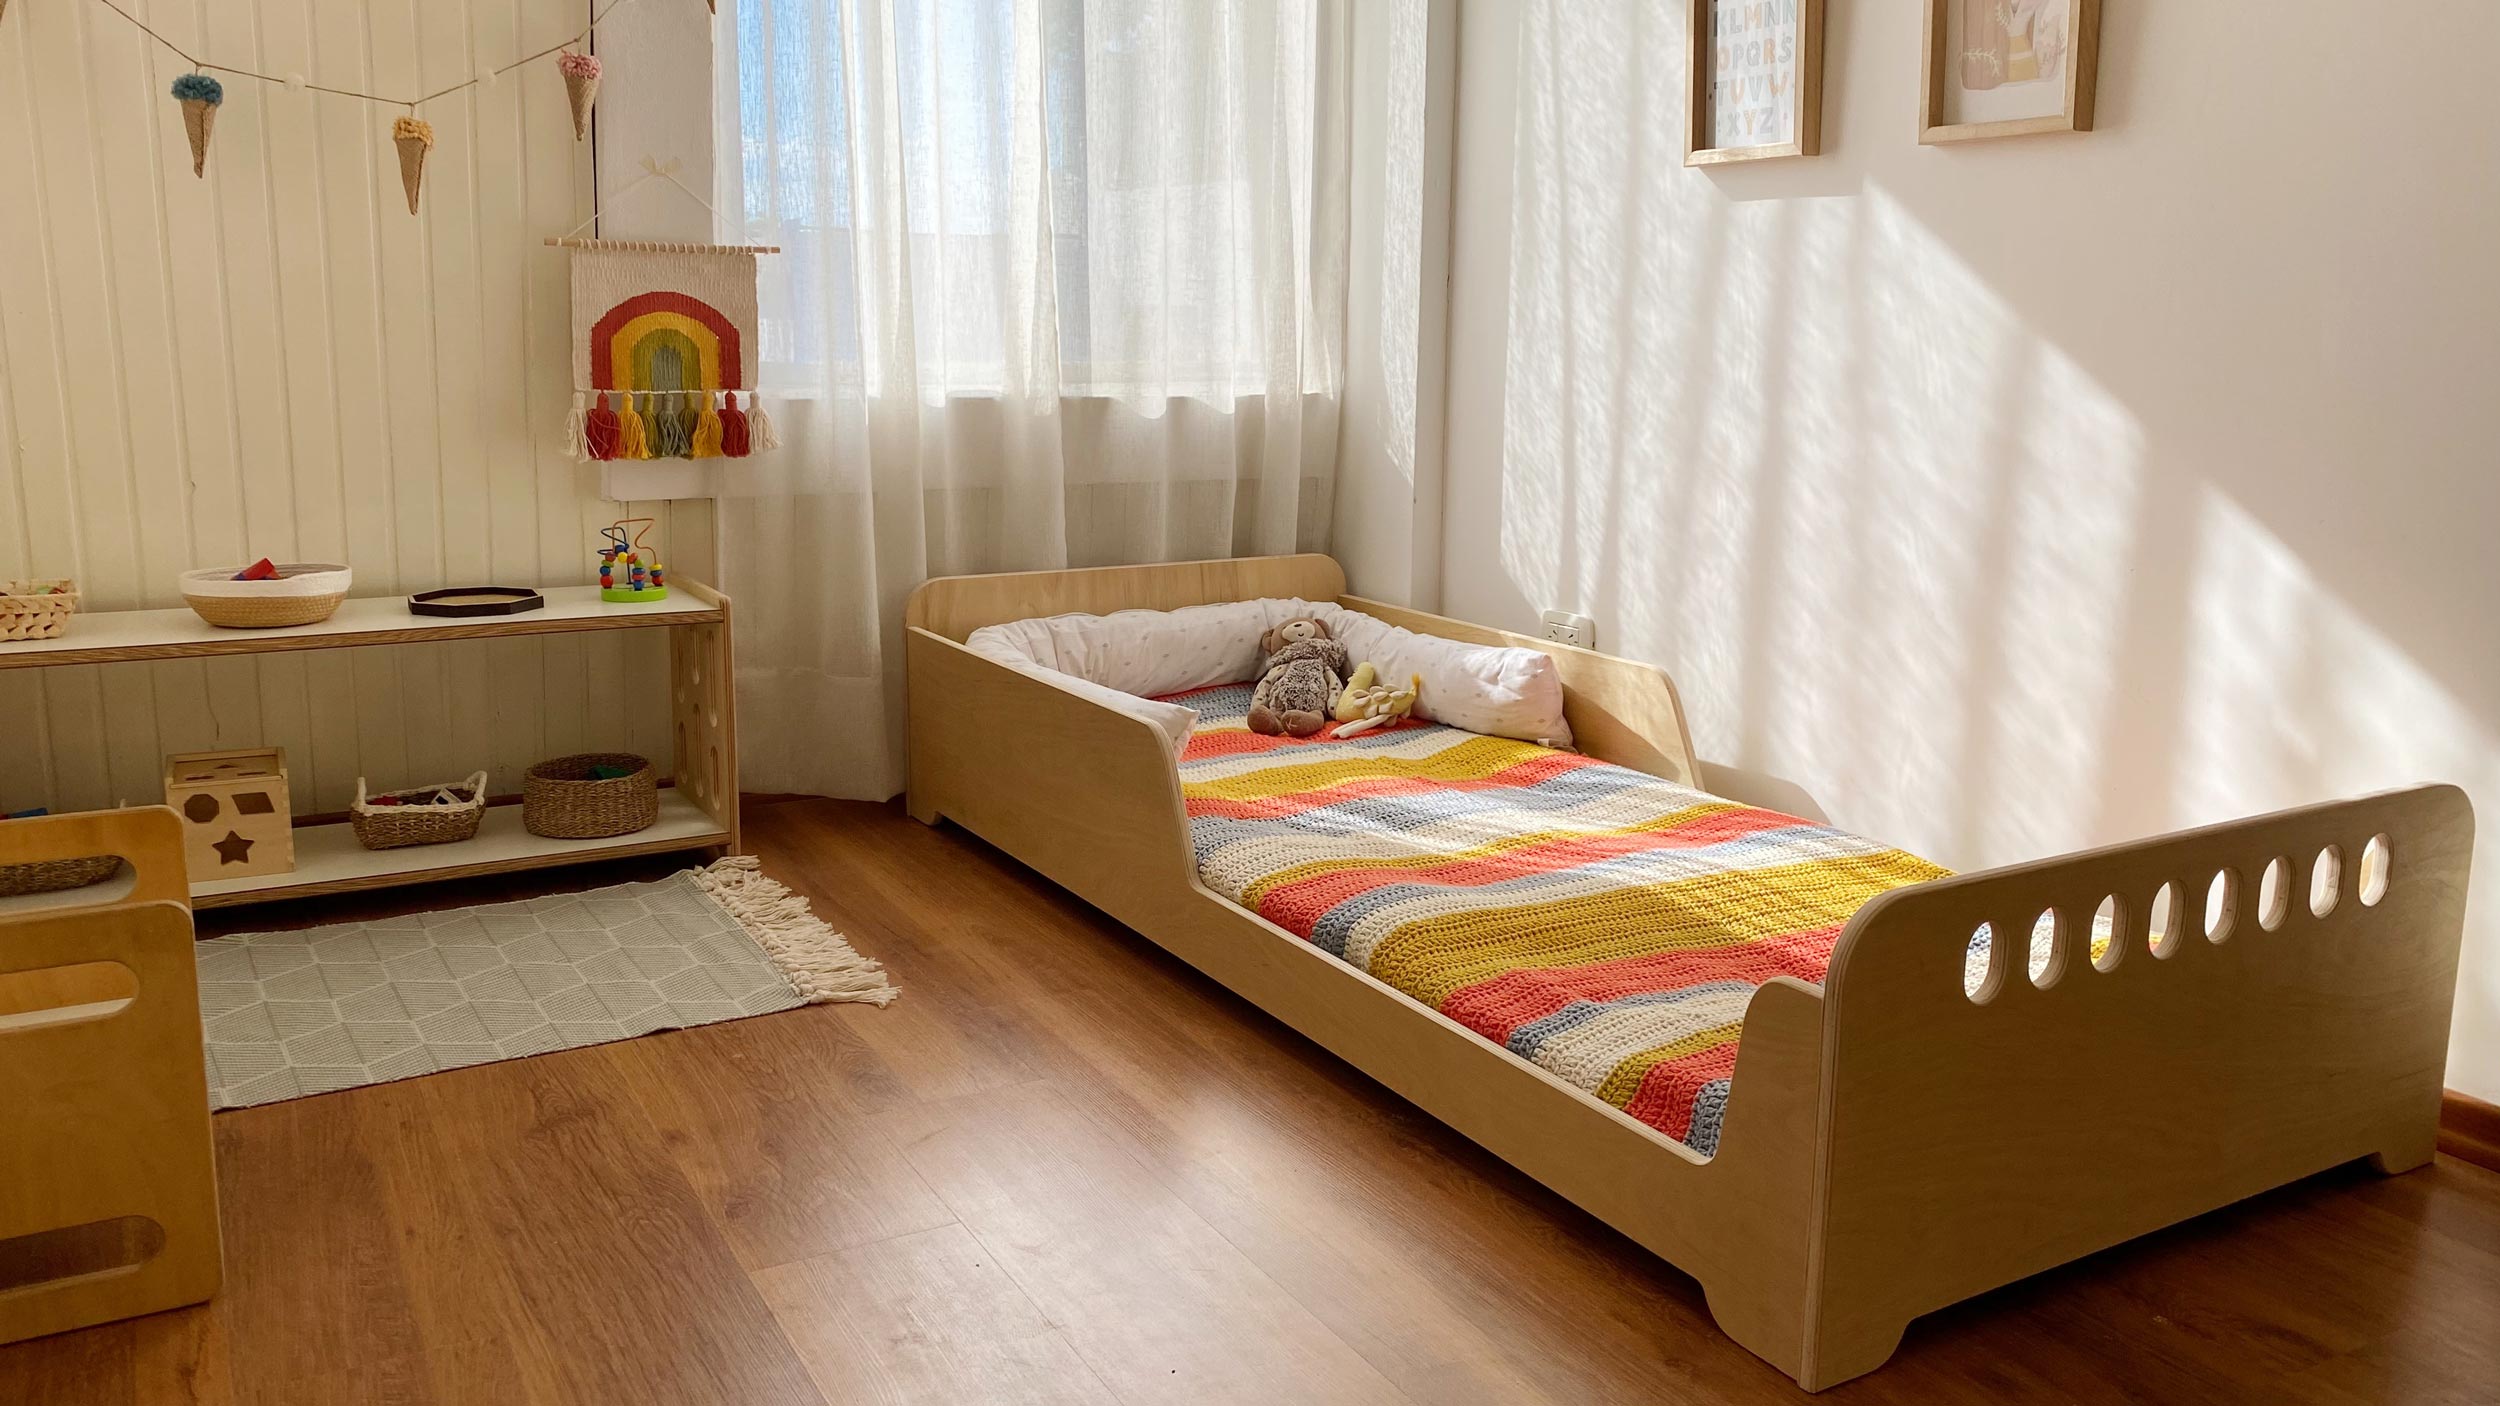 Cama con casita Muebles inspirados en Pedagogía Montessori